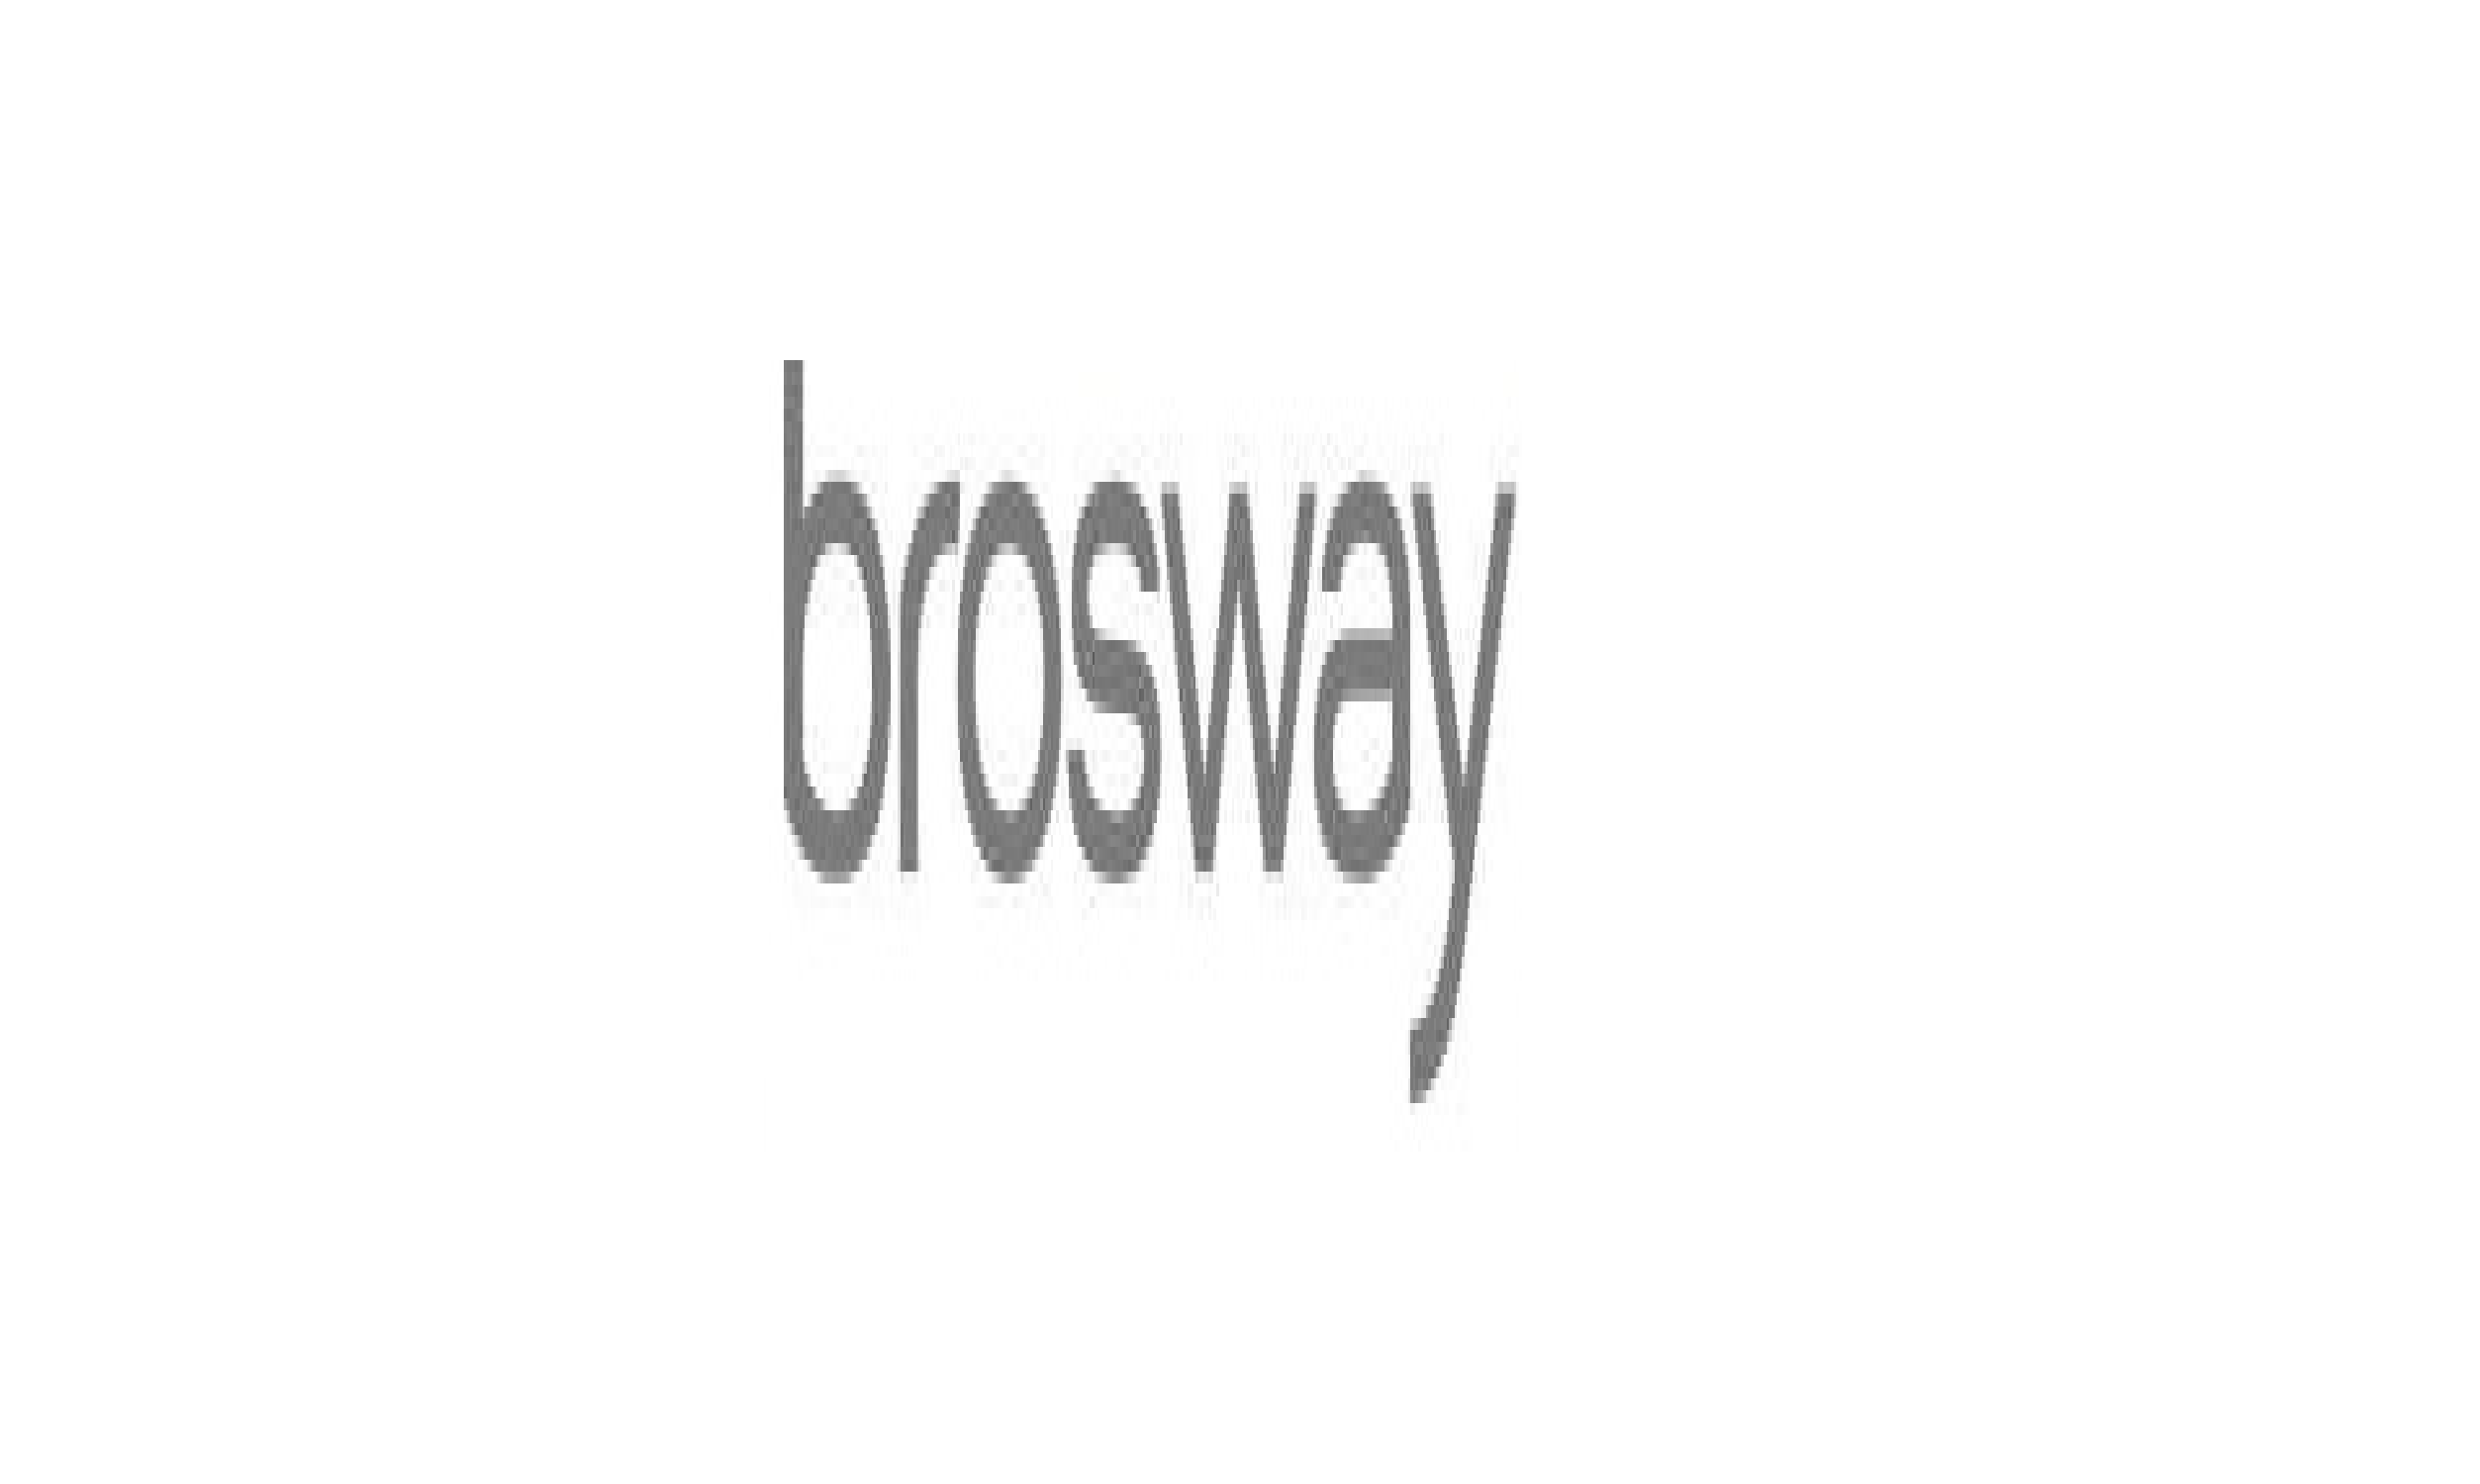 Brosway